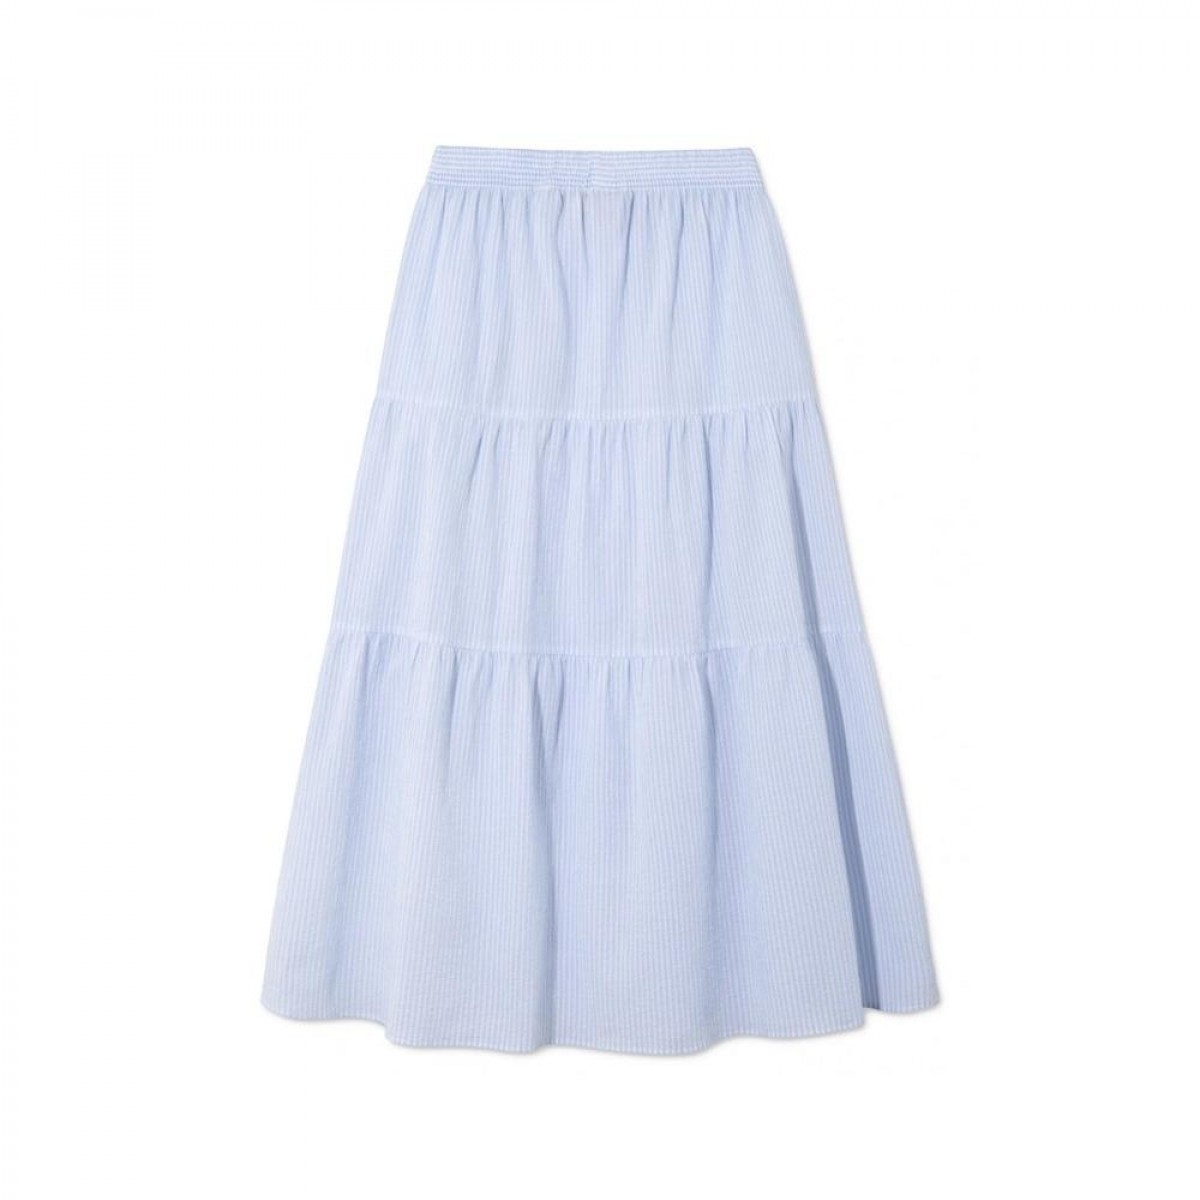 phi skirt - light blue / white stripe - bag 